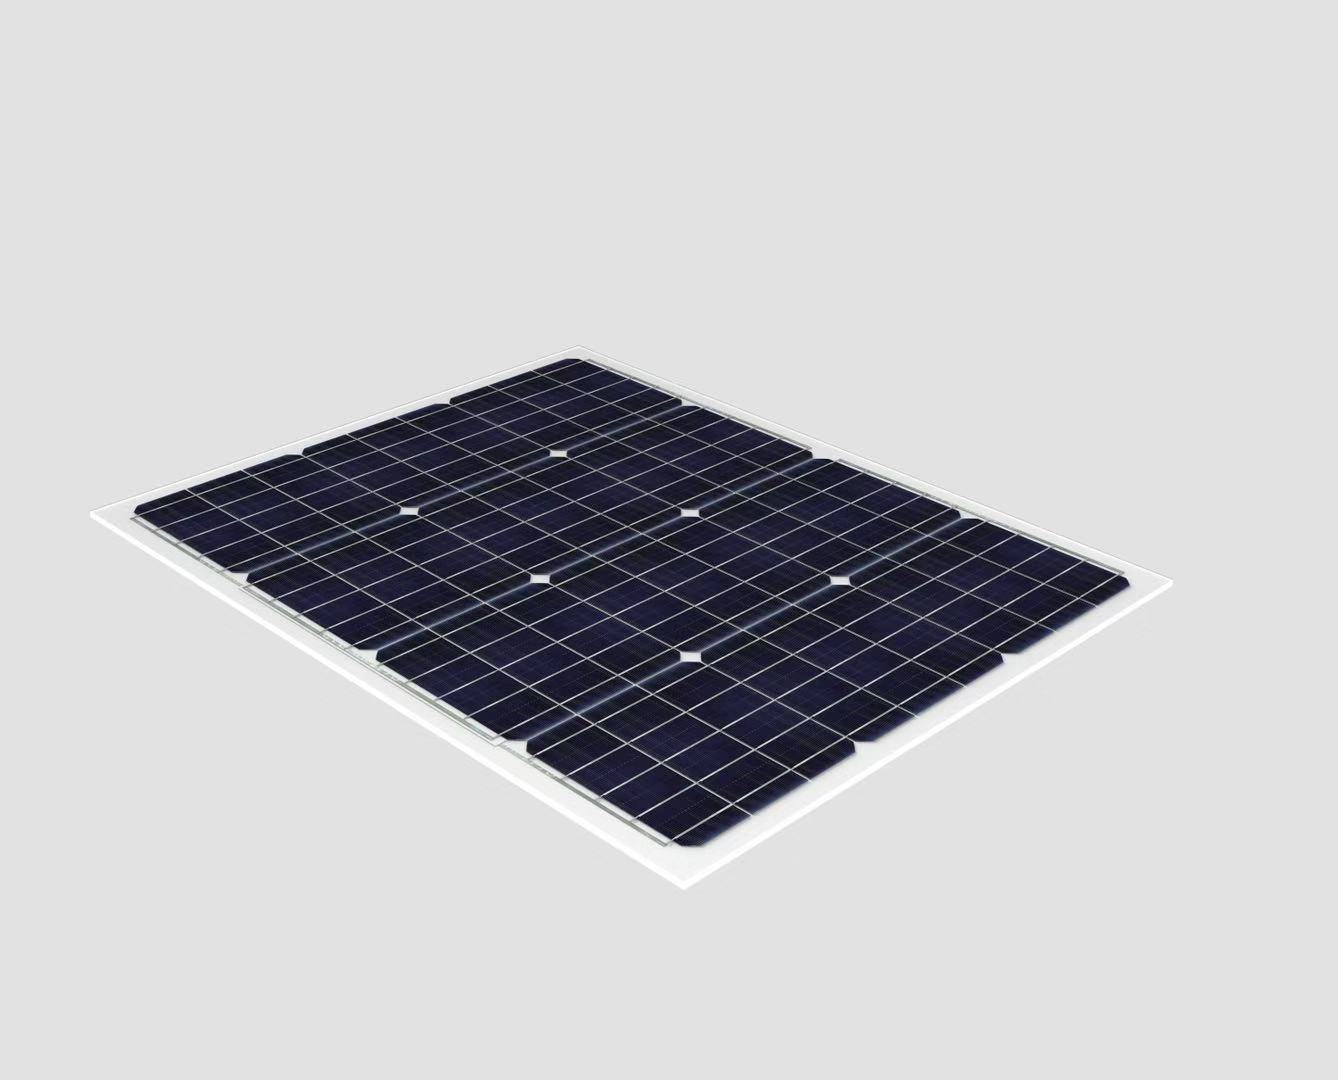 Neues ultraleichtes Solarmodul: OPES Solutions reduziert Modulgewicht um zwei Drittel